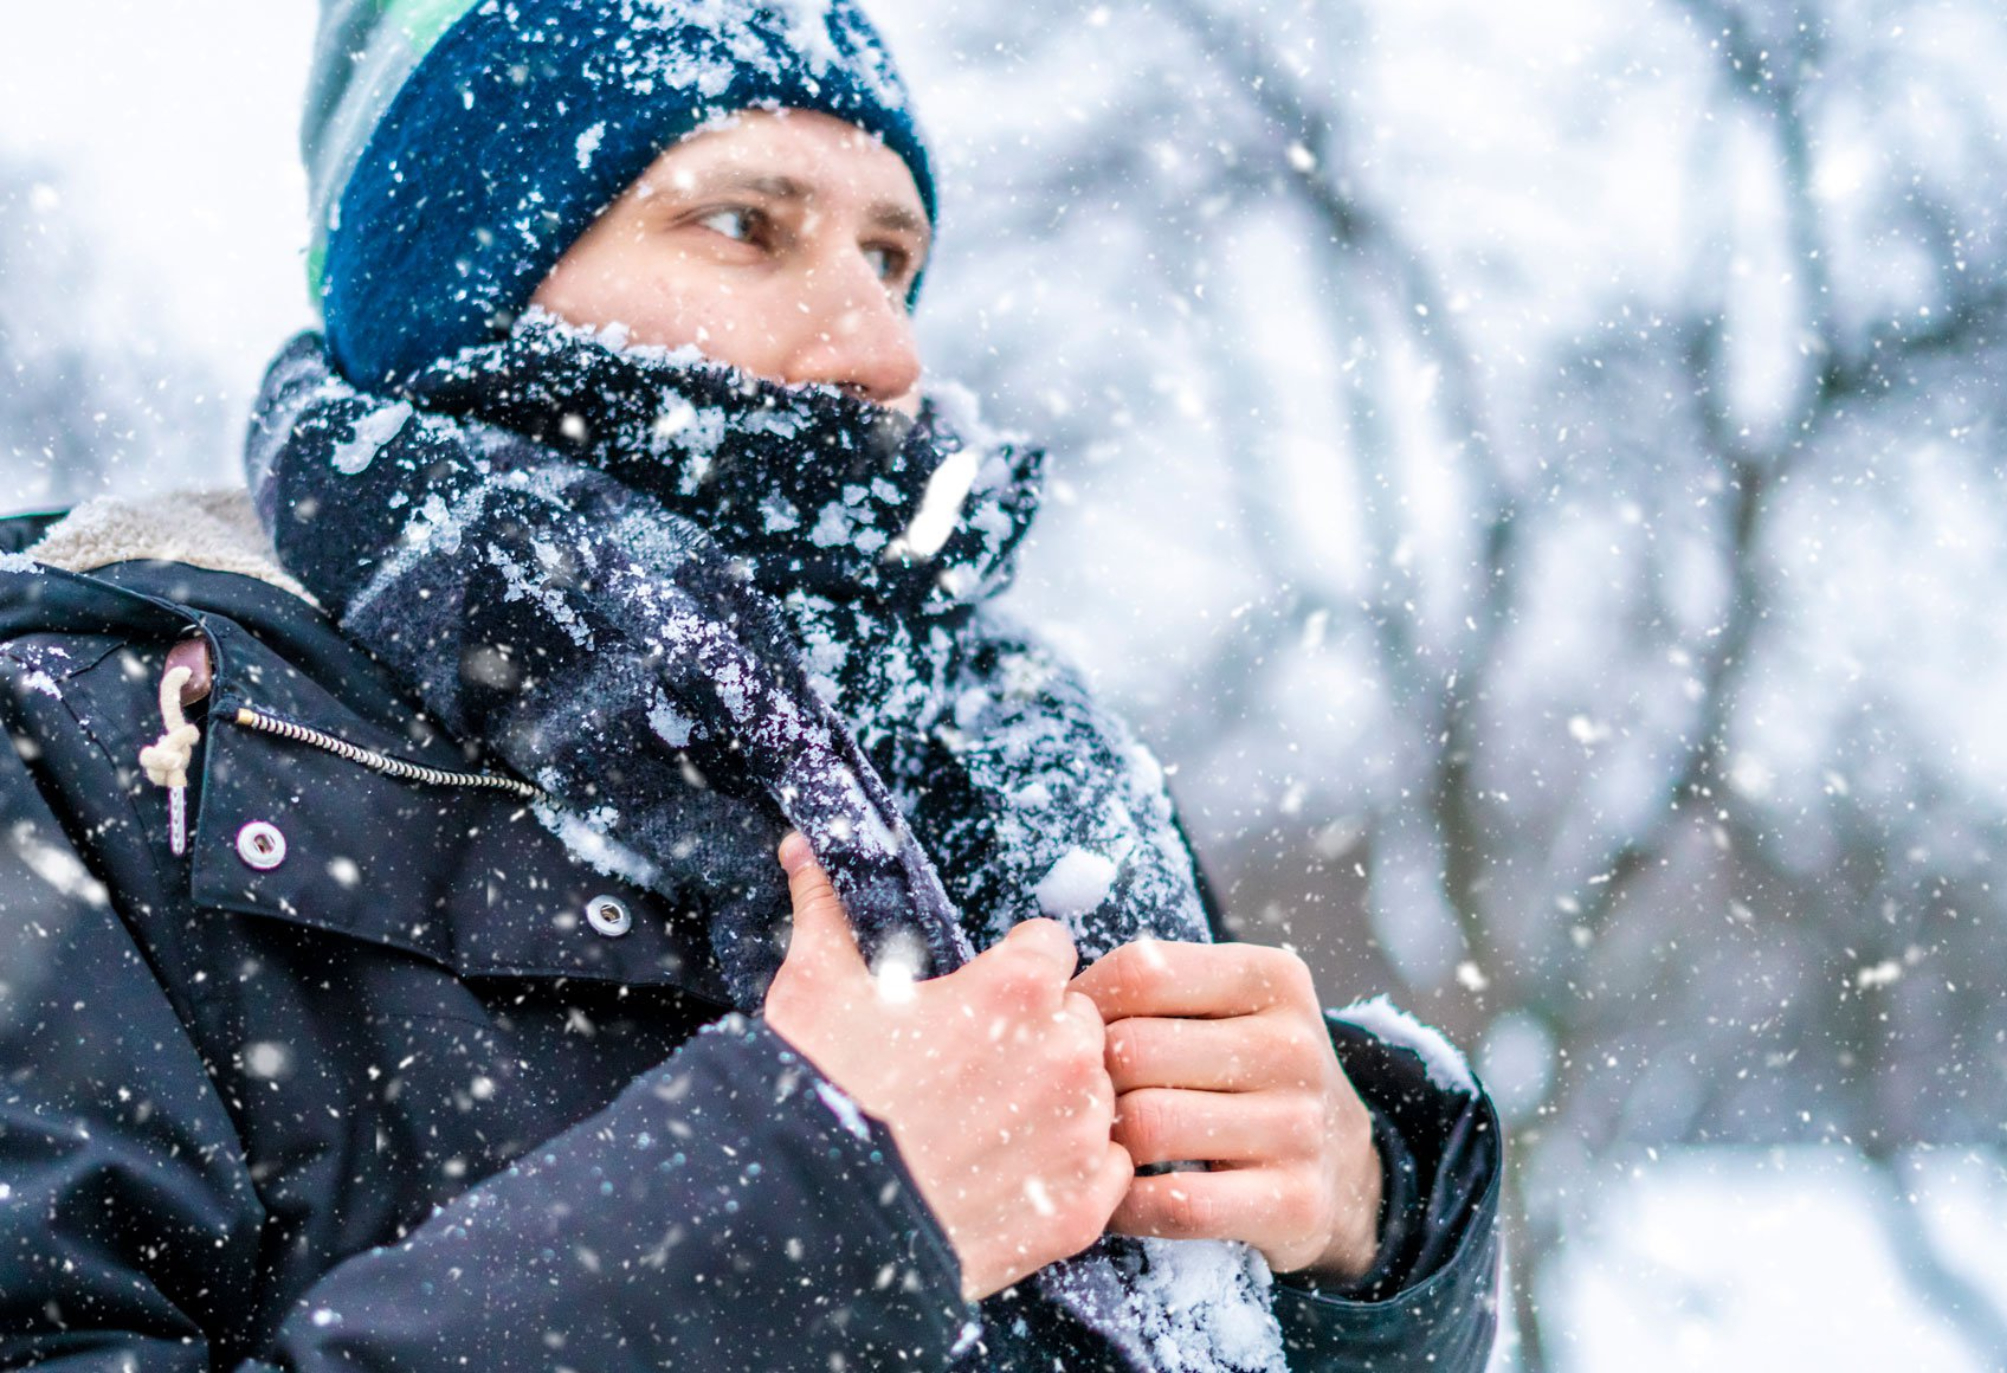 Τι προκαλεί το υπερβολικό κρύο και οι πολύ χαμηλές θερμοκρασίες στο σώμα μας